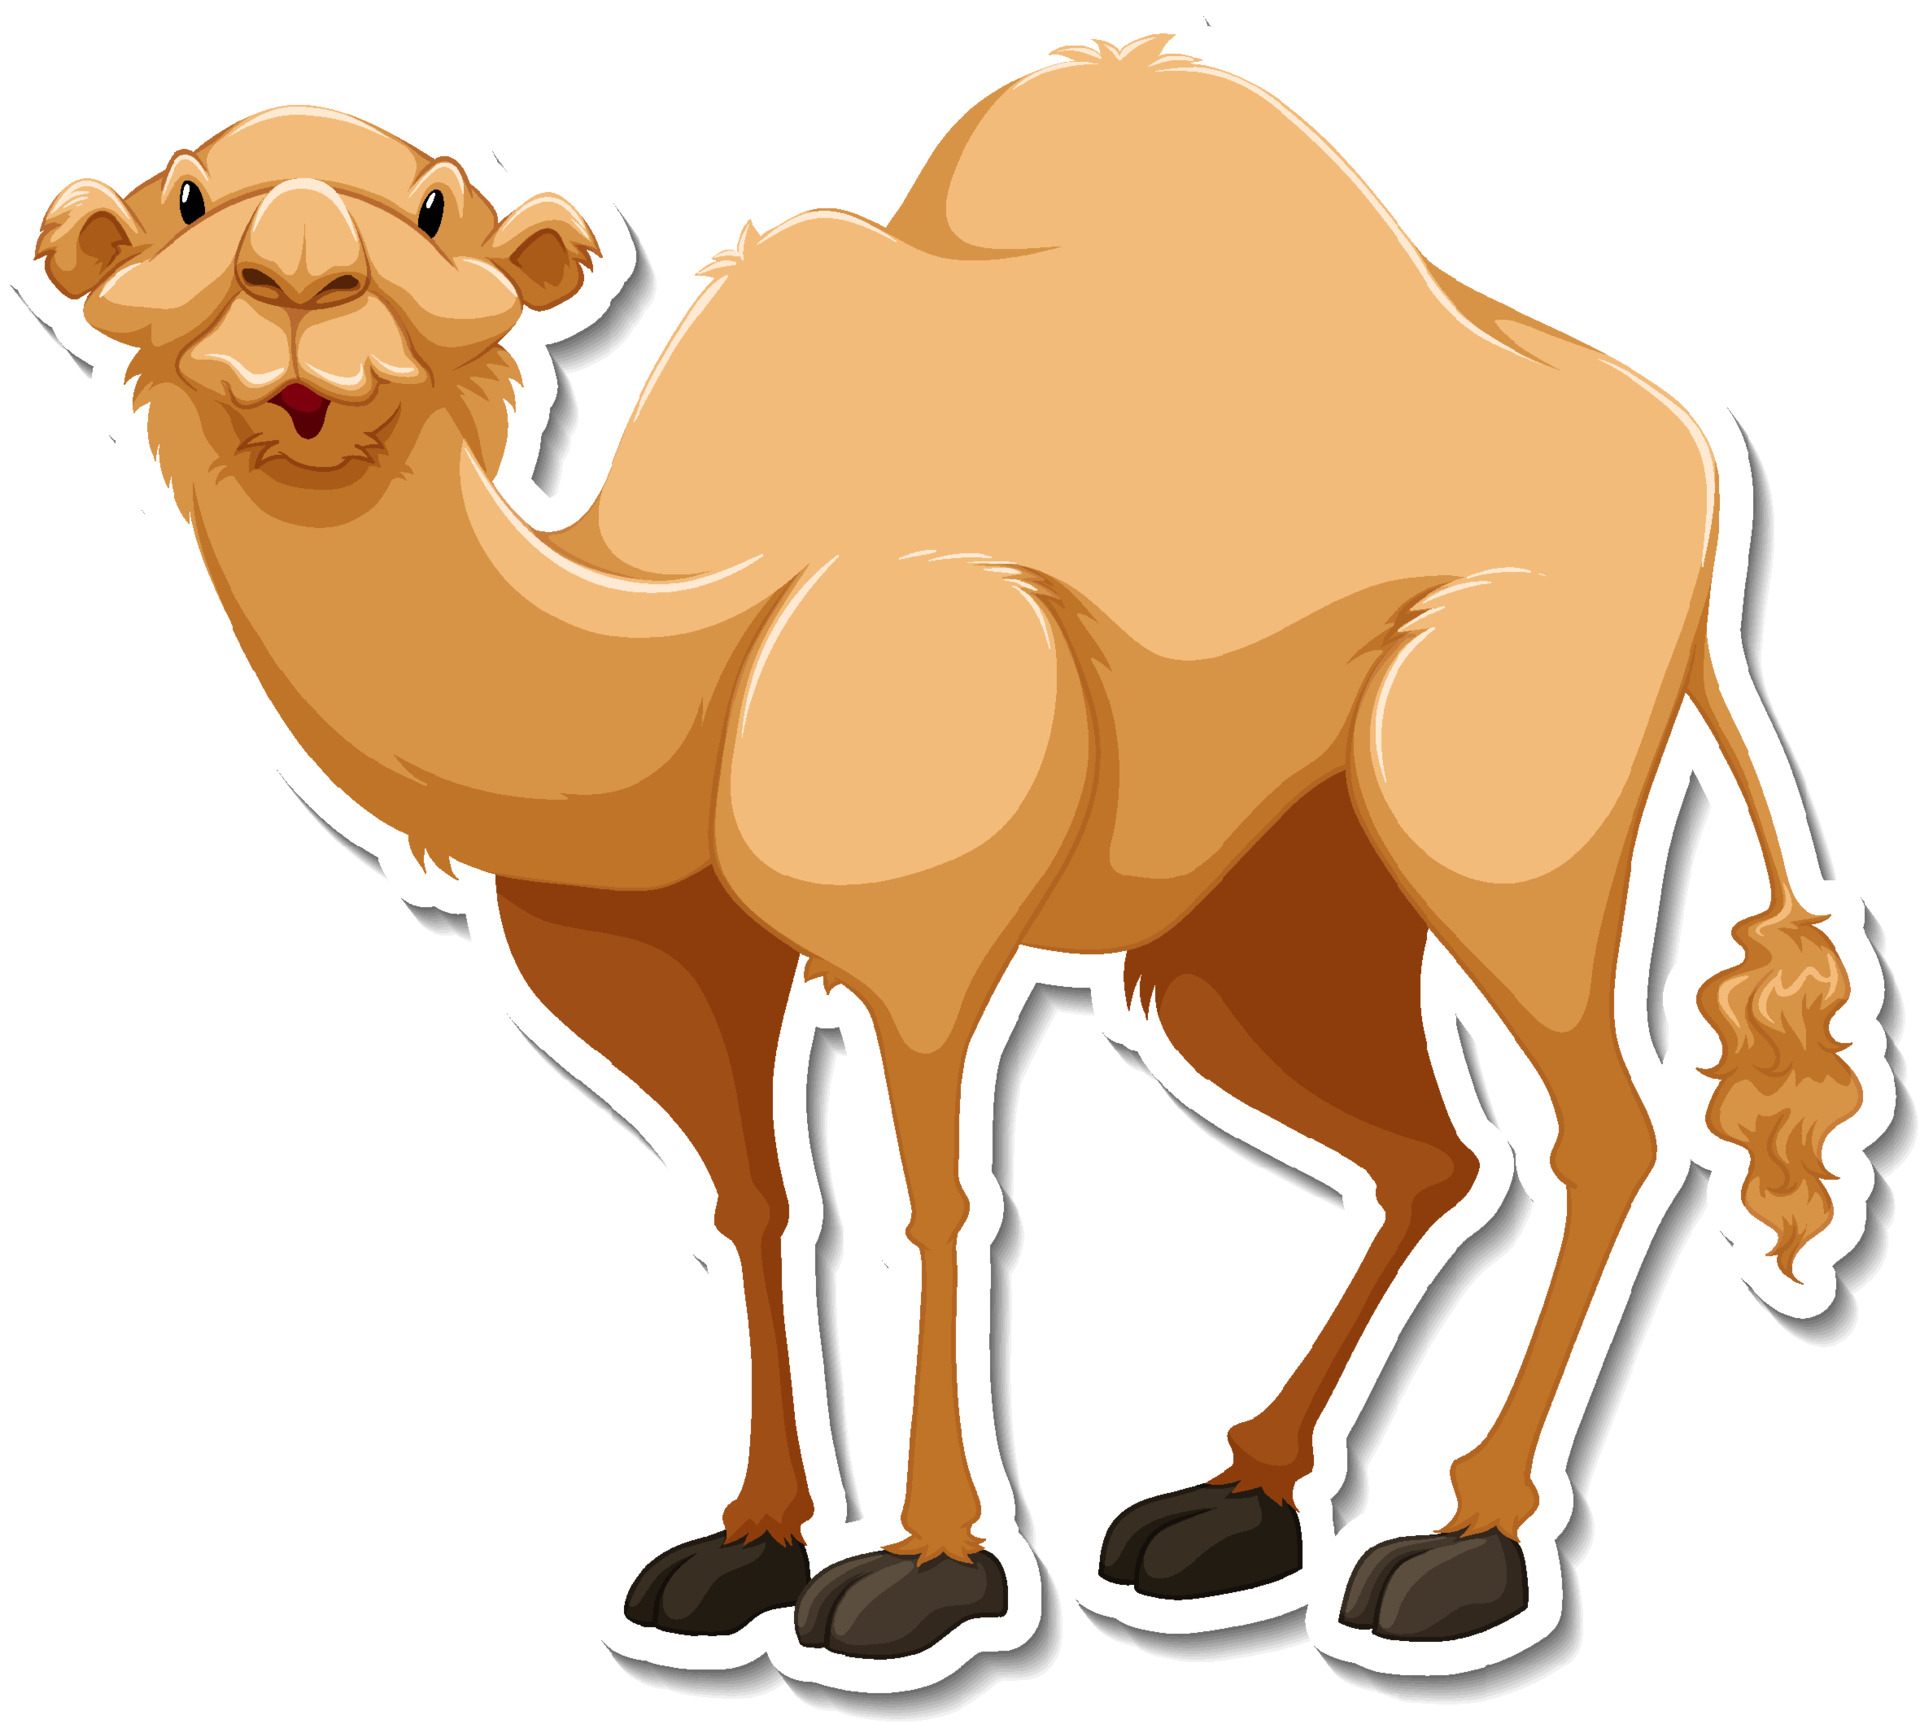 A sticker template of camel cartoon character 3657839 Vector Art at Vecteezy